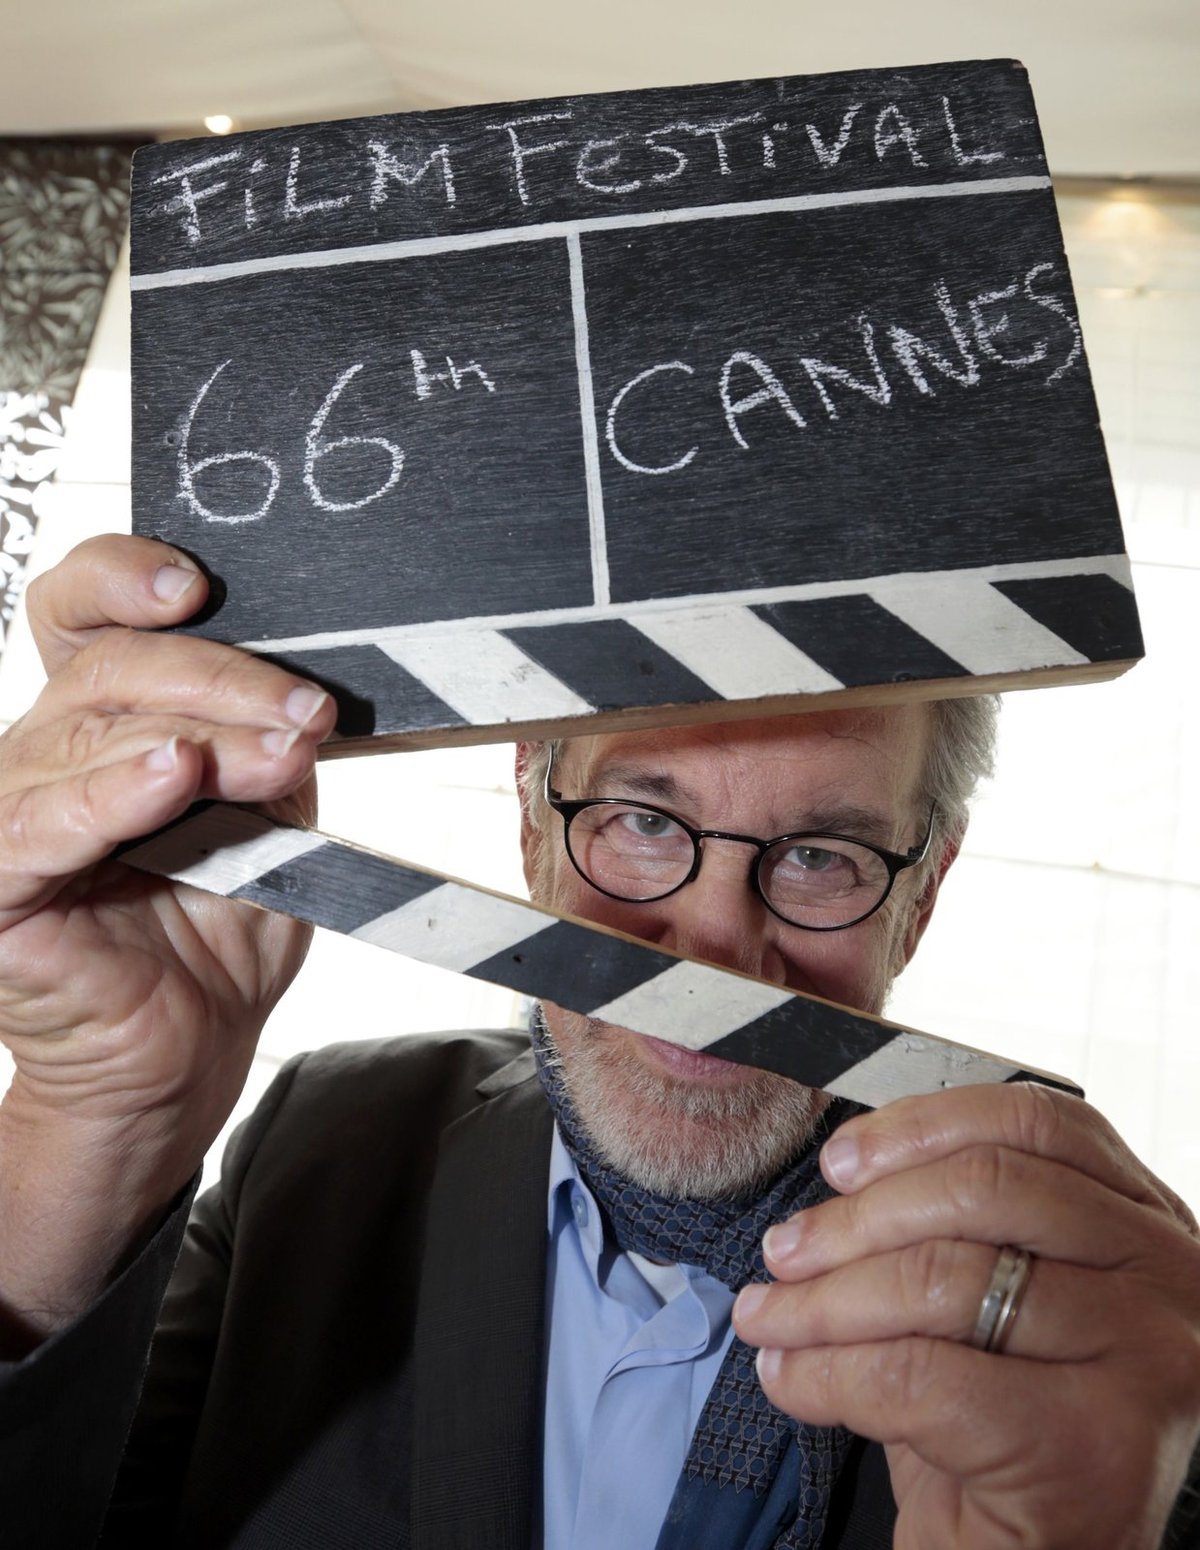 Symbolickou klapkou zahájil festival režisér Steven Spielberg (66, Schindlerův seznam).